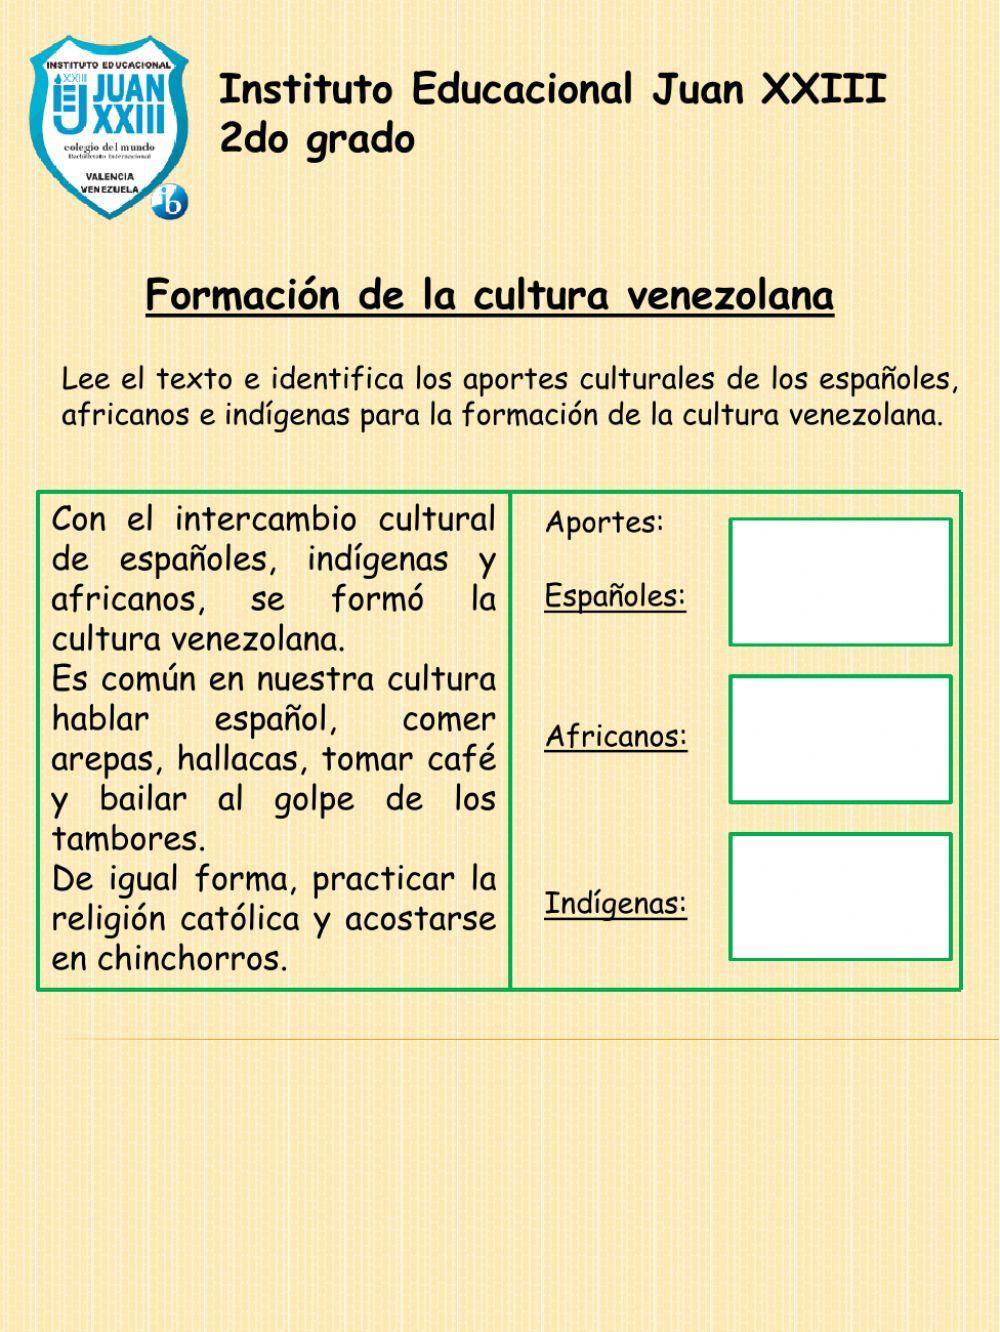 Aportes culturales de grupos étnicos a la cultura venezolana